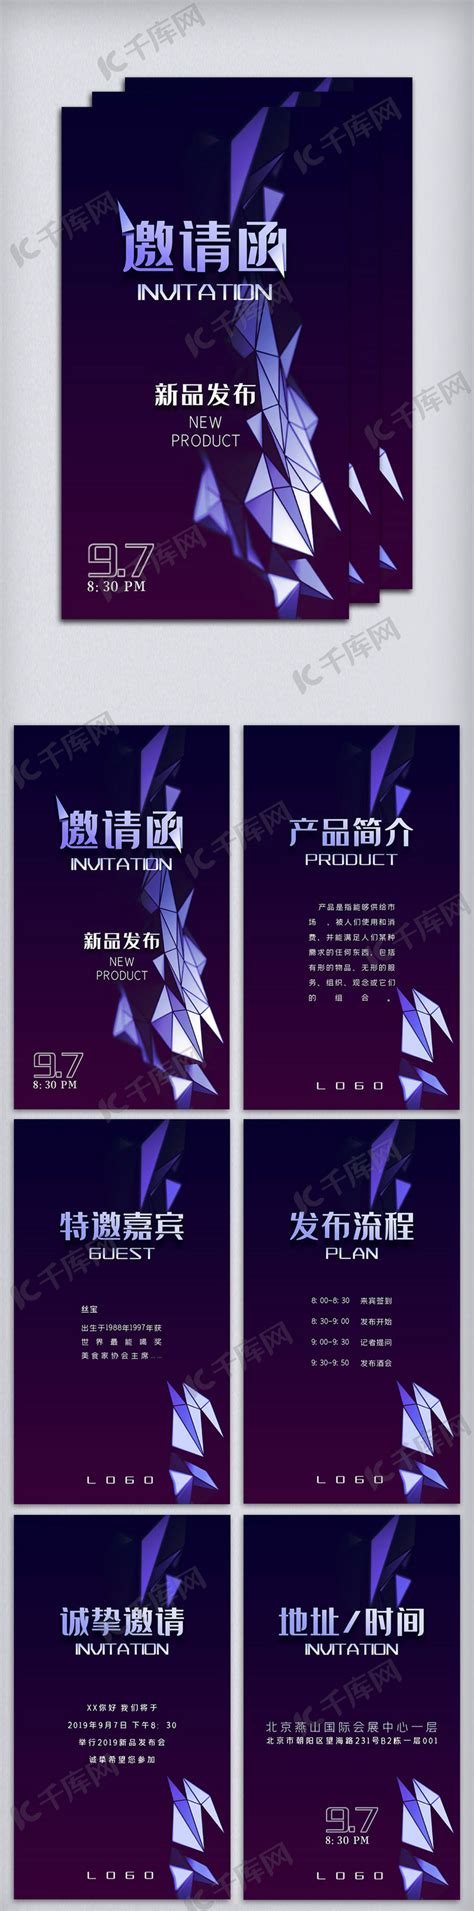 黑色酷炫邀请函h5模版海报模板下载-千库网